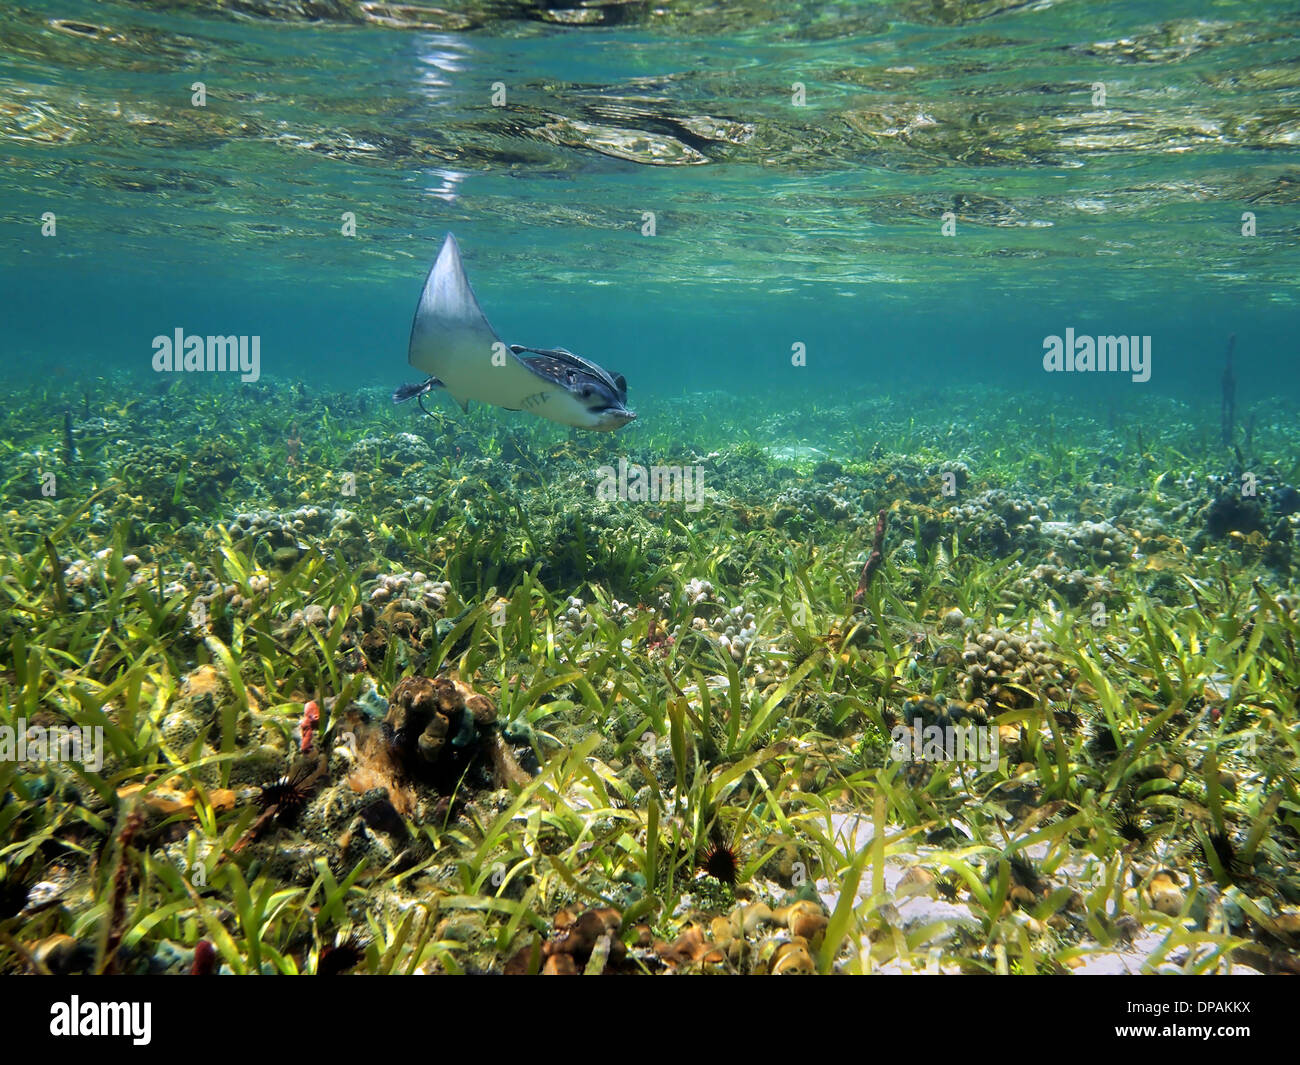 Spotted Eagle Ray Aetobatus narinari près de surface de l'eau dans un plat peu profond, des récifs coralliens de la mer des Caraïbes Banque D'Images